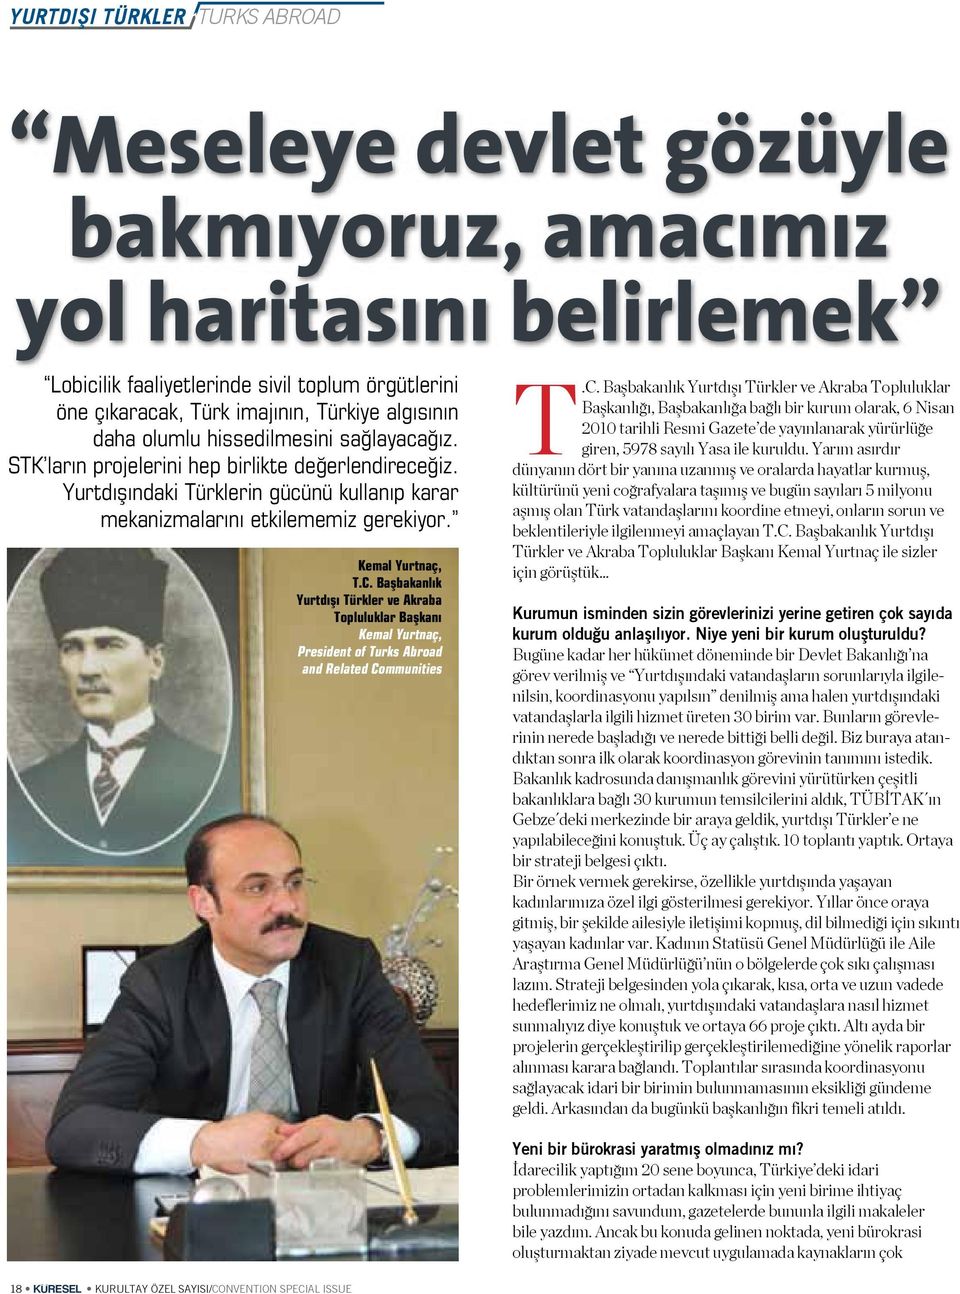 Başbakanlık Yurtdışı Türkler ve Akraba Topluluklar Başkanı Kemal Yurtnaç, President of Turks Abroad and Related Co